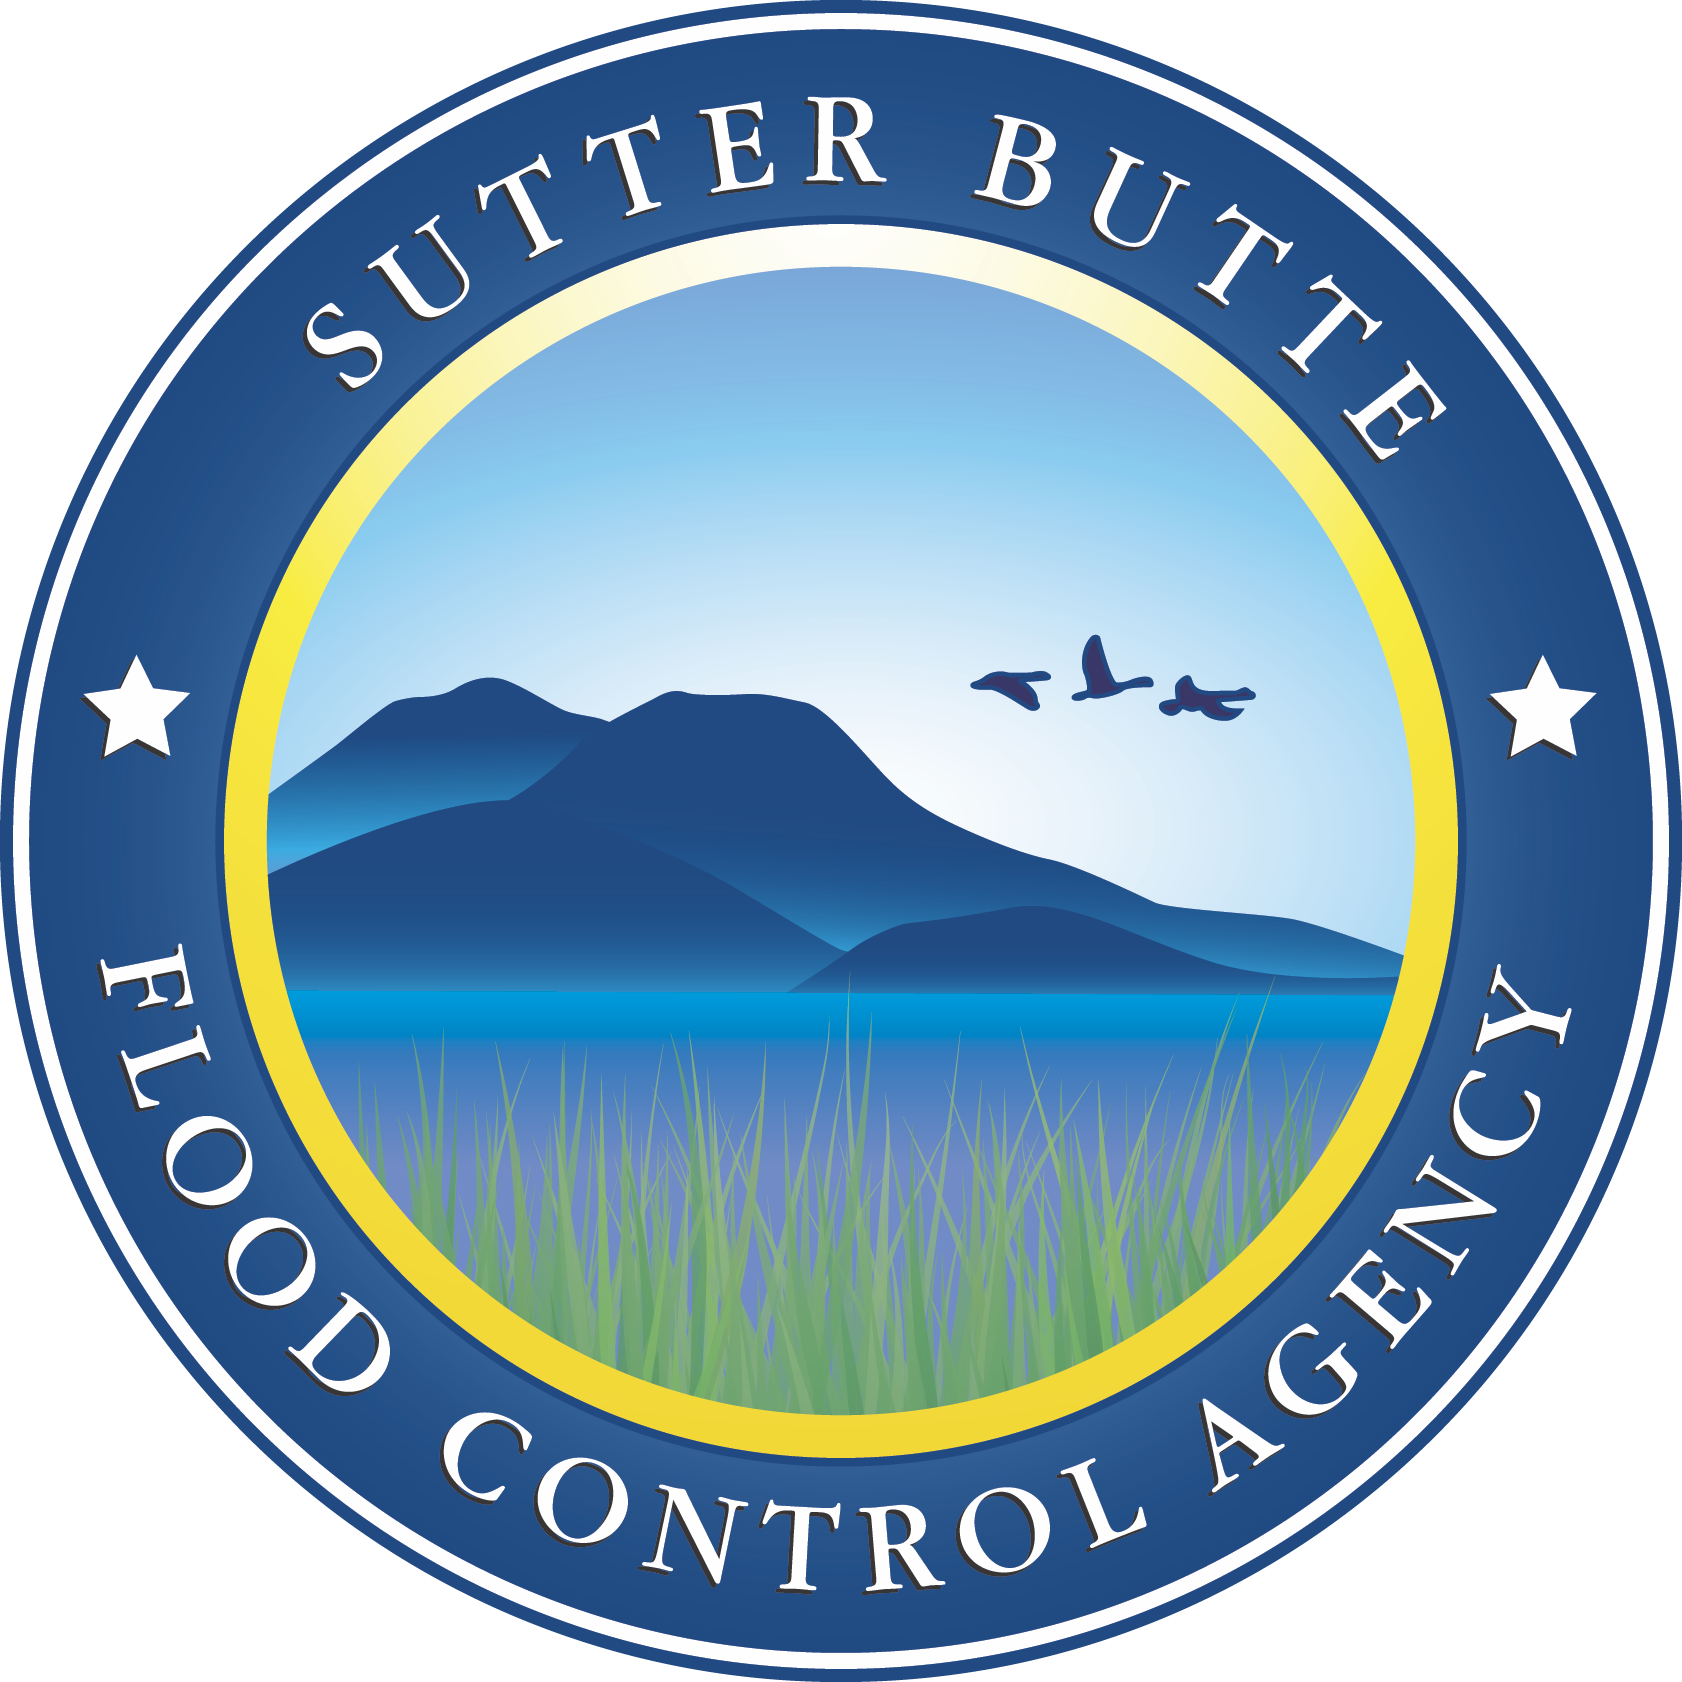 Sutter Butte Flood Control Agency (SBFCA)